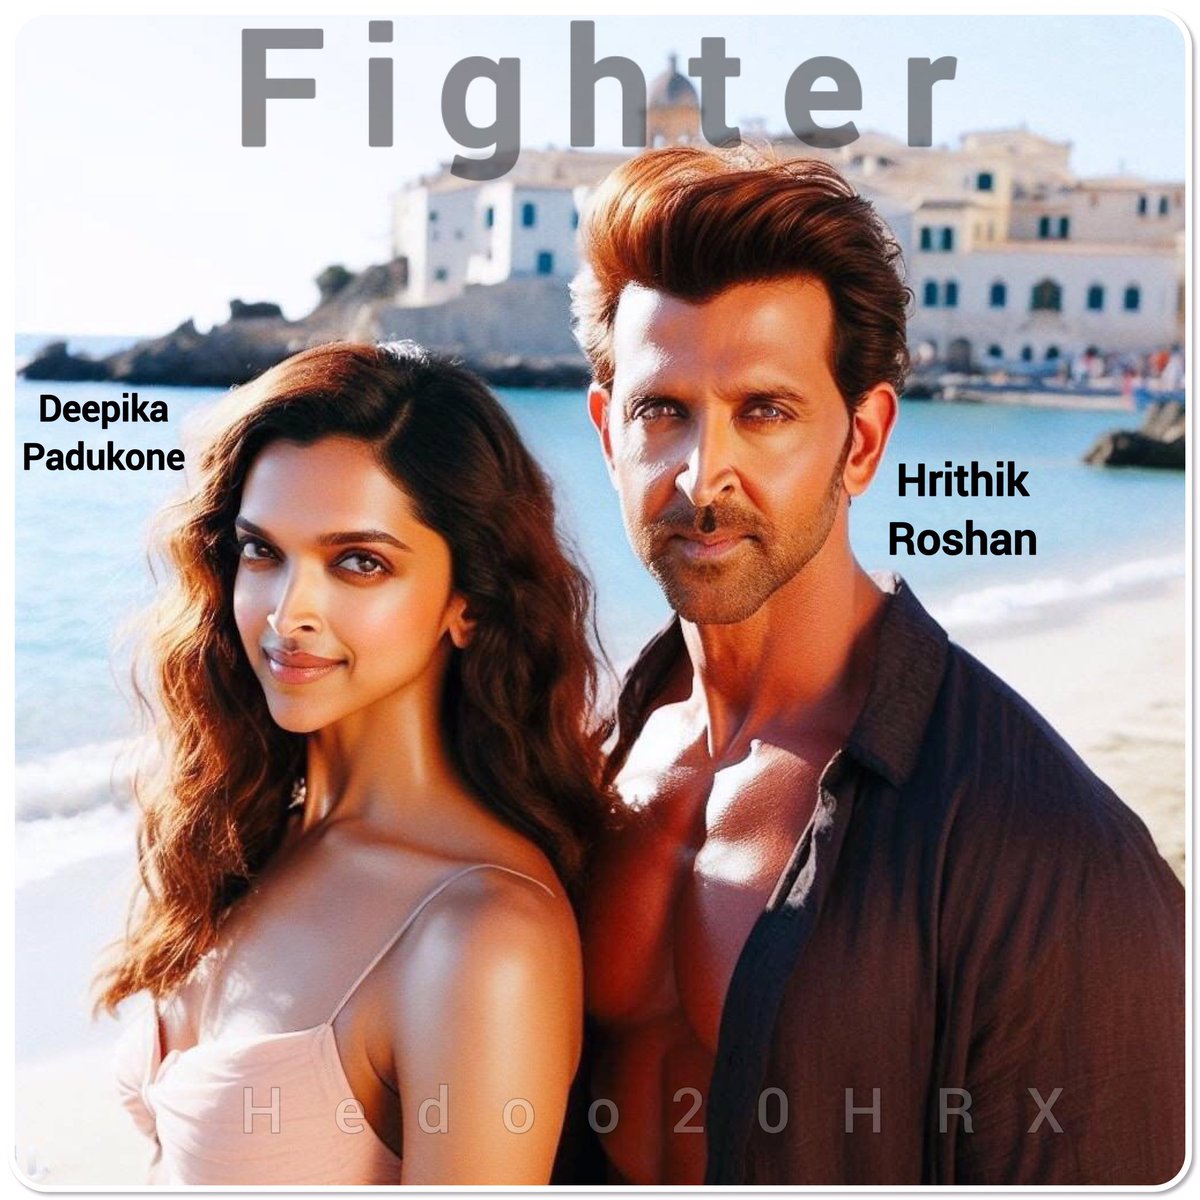 الإعلان التشويقي لـ #ريتيك_روشان و #ديبيكا_بادوكون #انيل_كابور نجوم فيلم #المقاتل سيتم إصداره في 5 ديسمبر..
:
#HrithikRoshan and #DeepikaPadukone #AnilKapoor starrer #Fighter’s teaser to release on December 5
:
#Hrithik #TeamHrithik  #Superstar #Bollywood